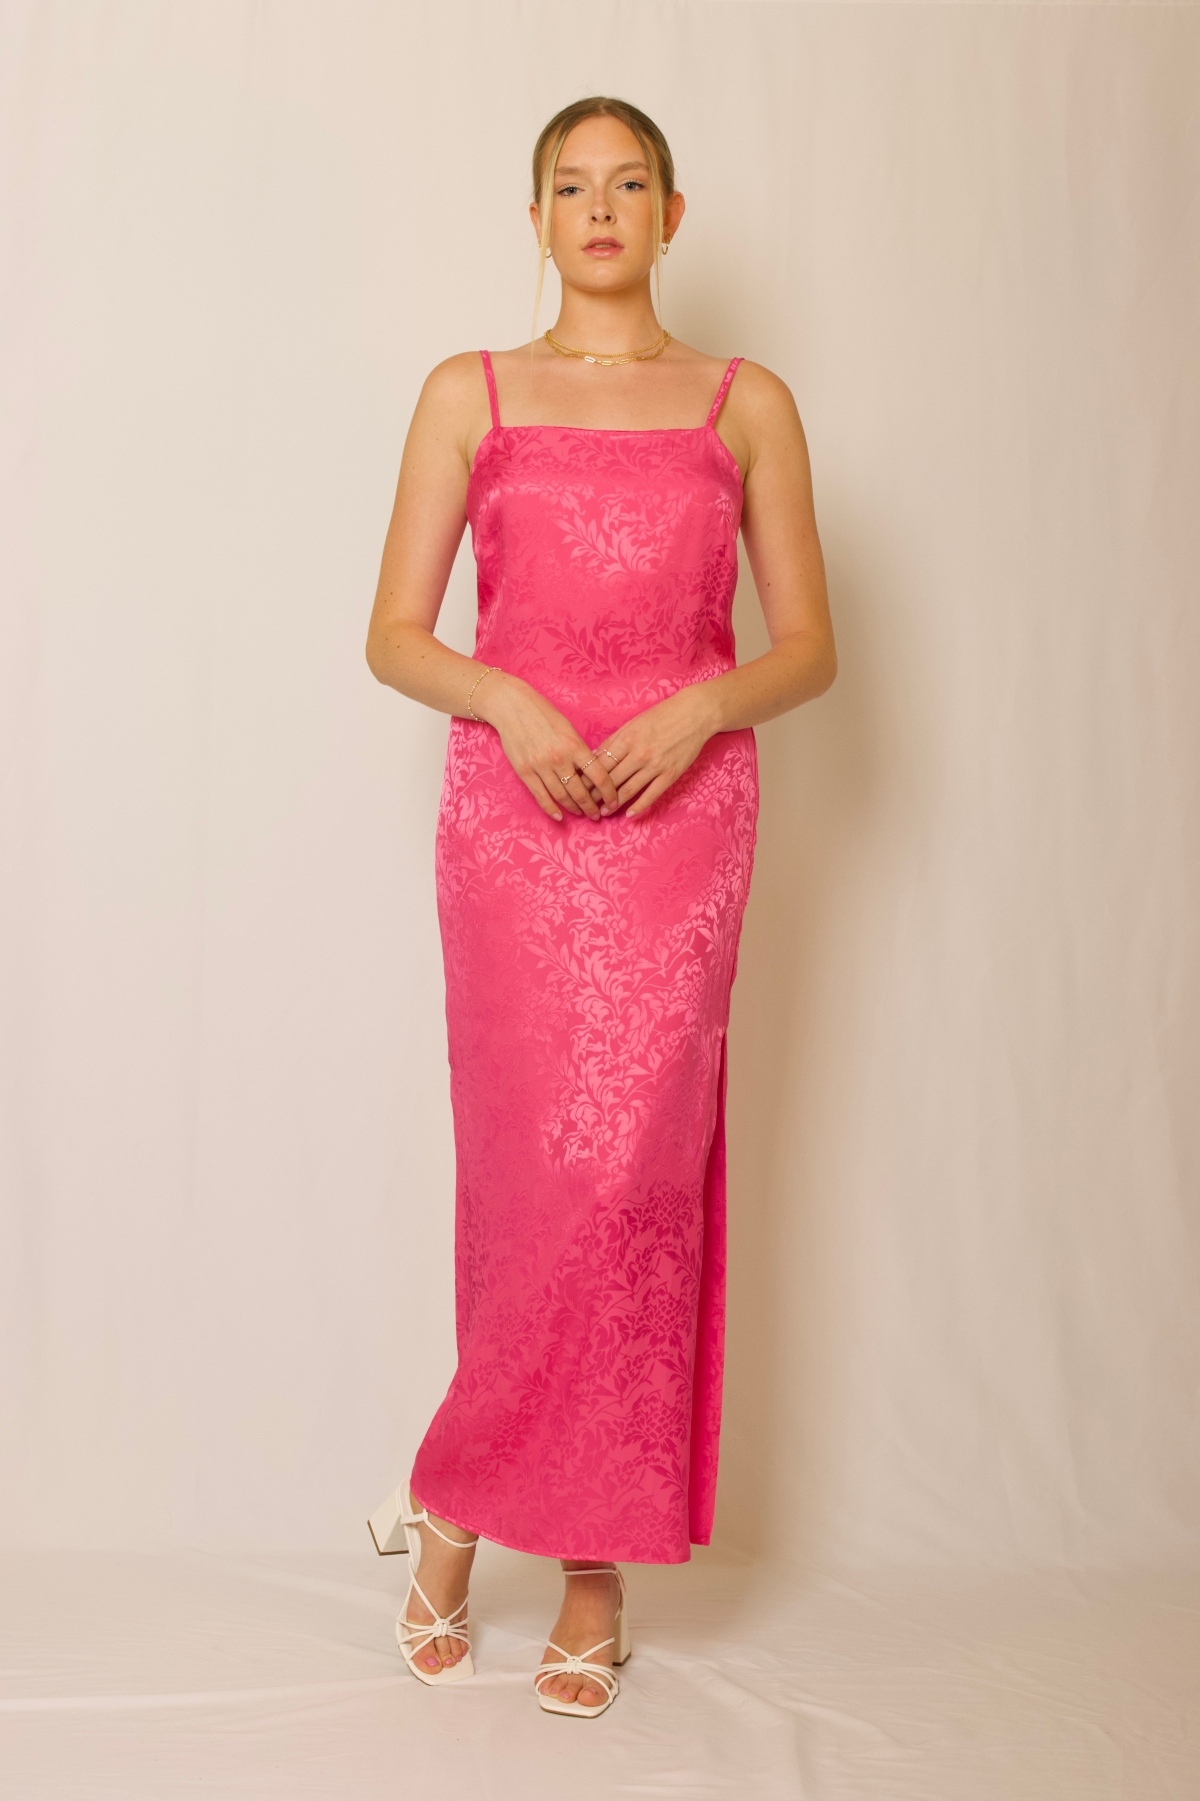 Floral Slip Dress - Hot pink